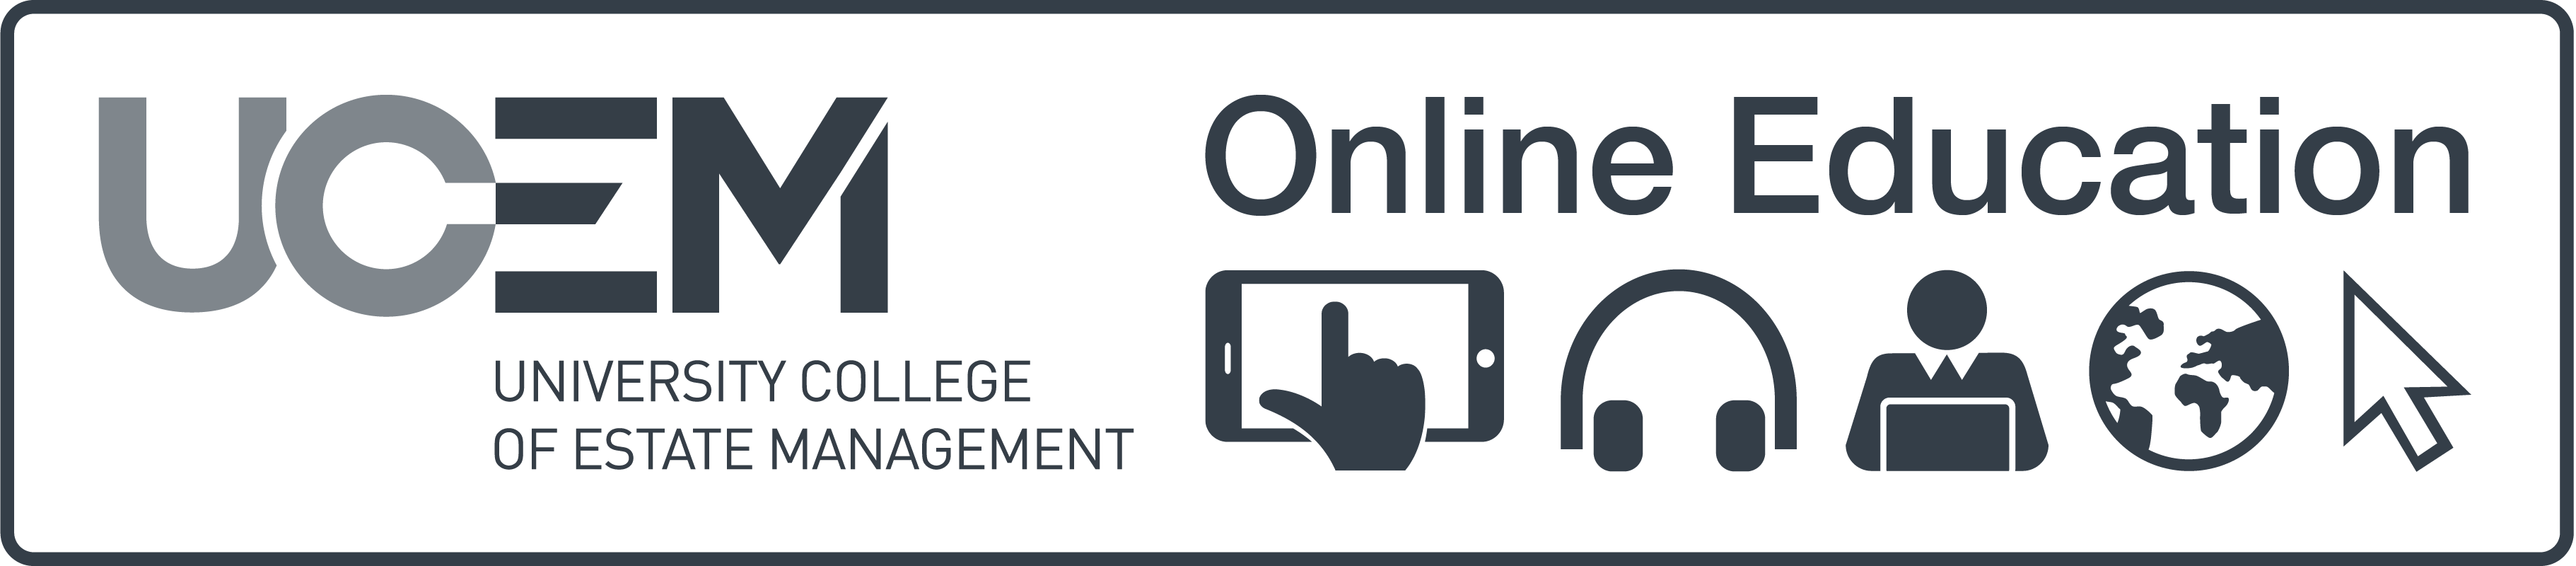 UCEM Online Education